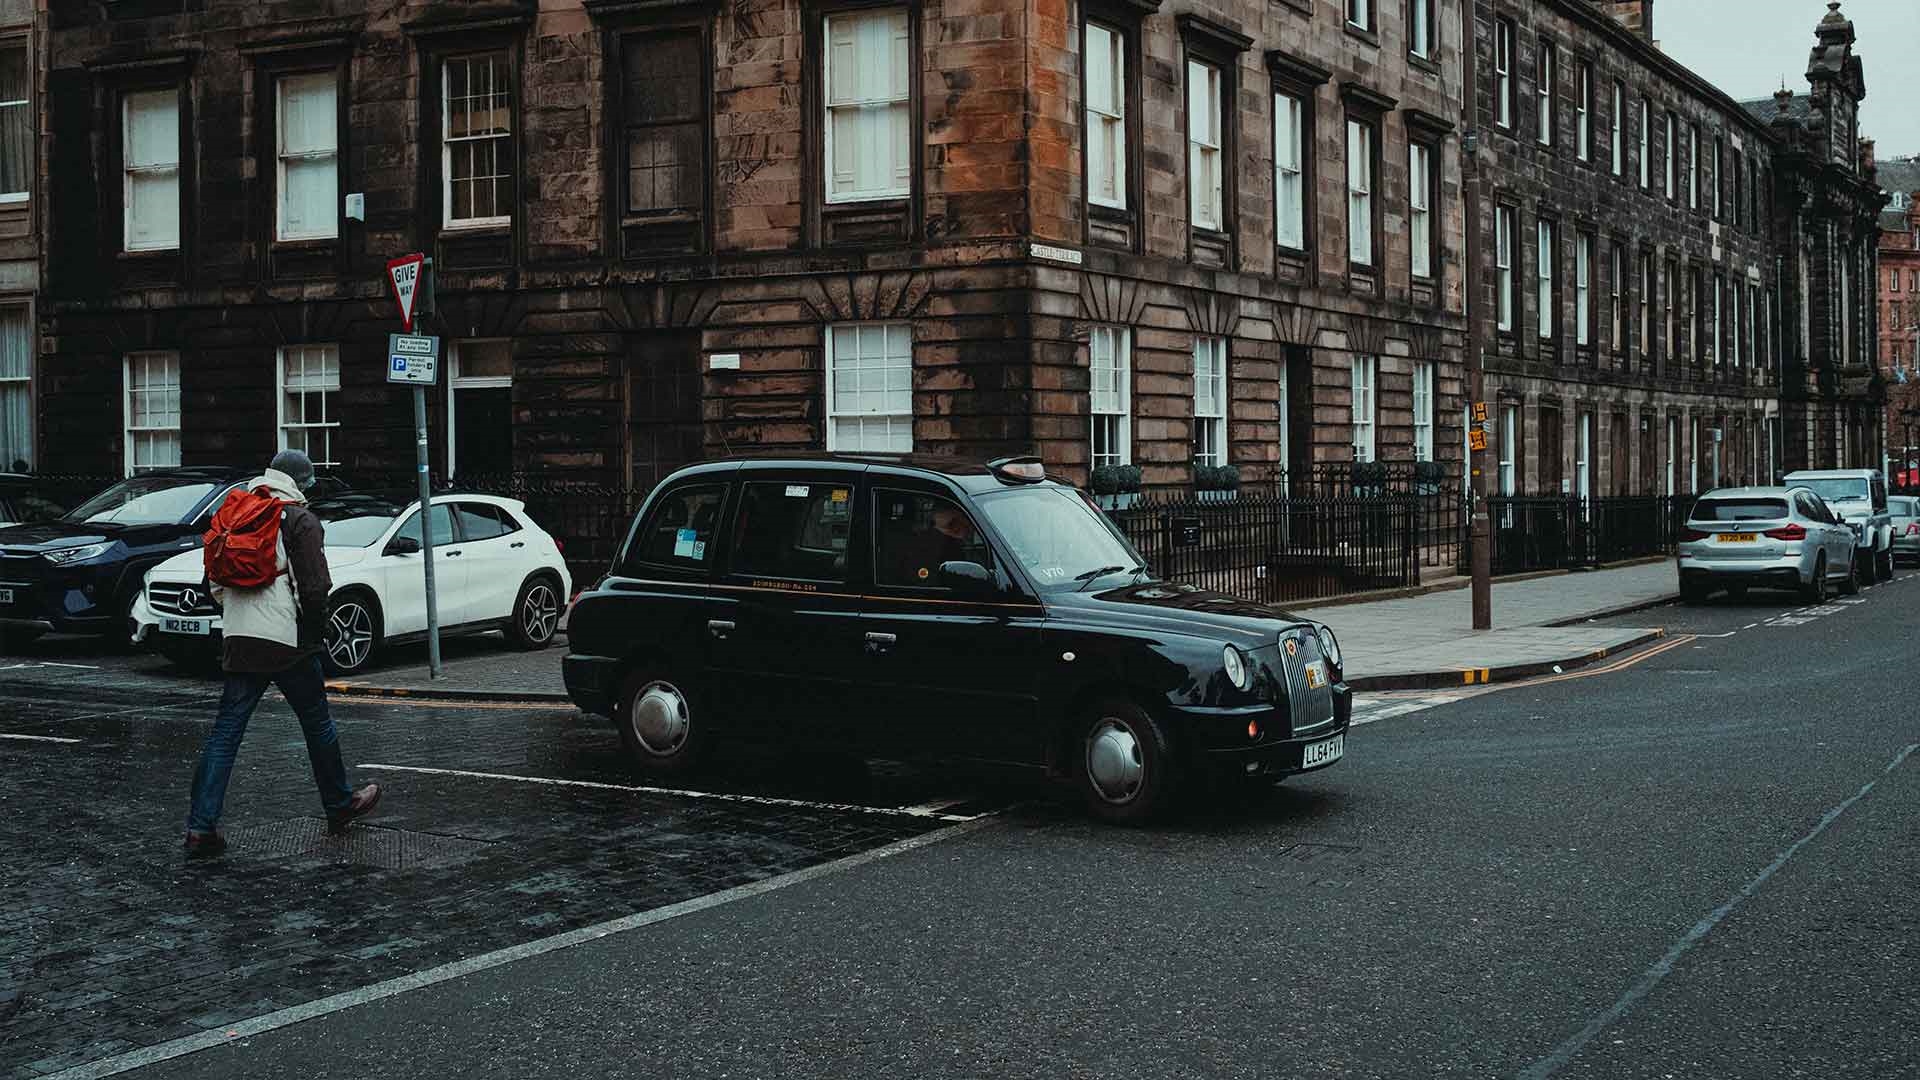 A taxi on a Glasgow street